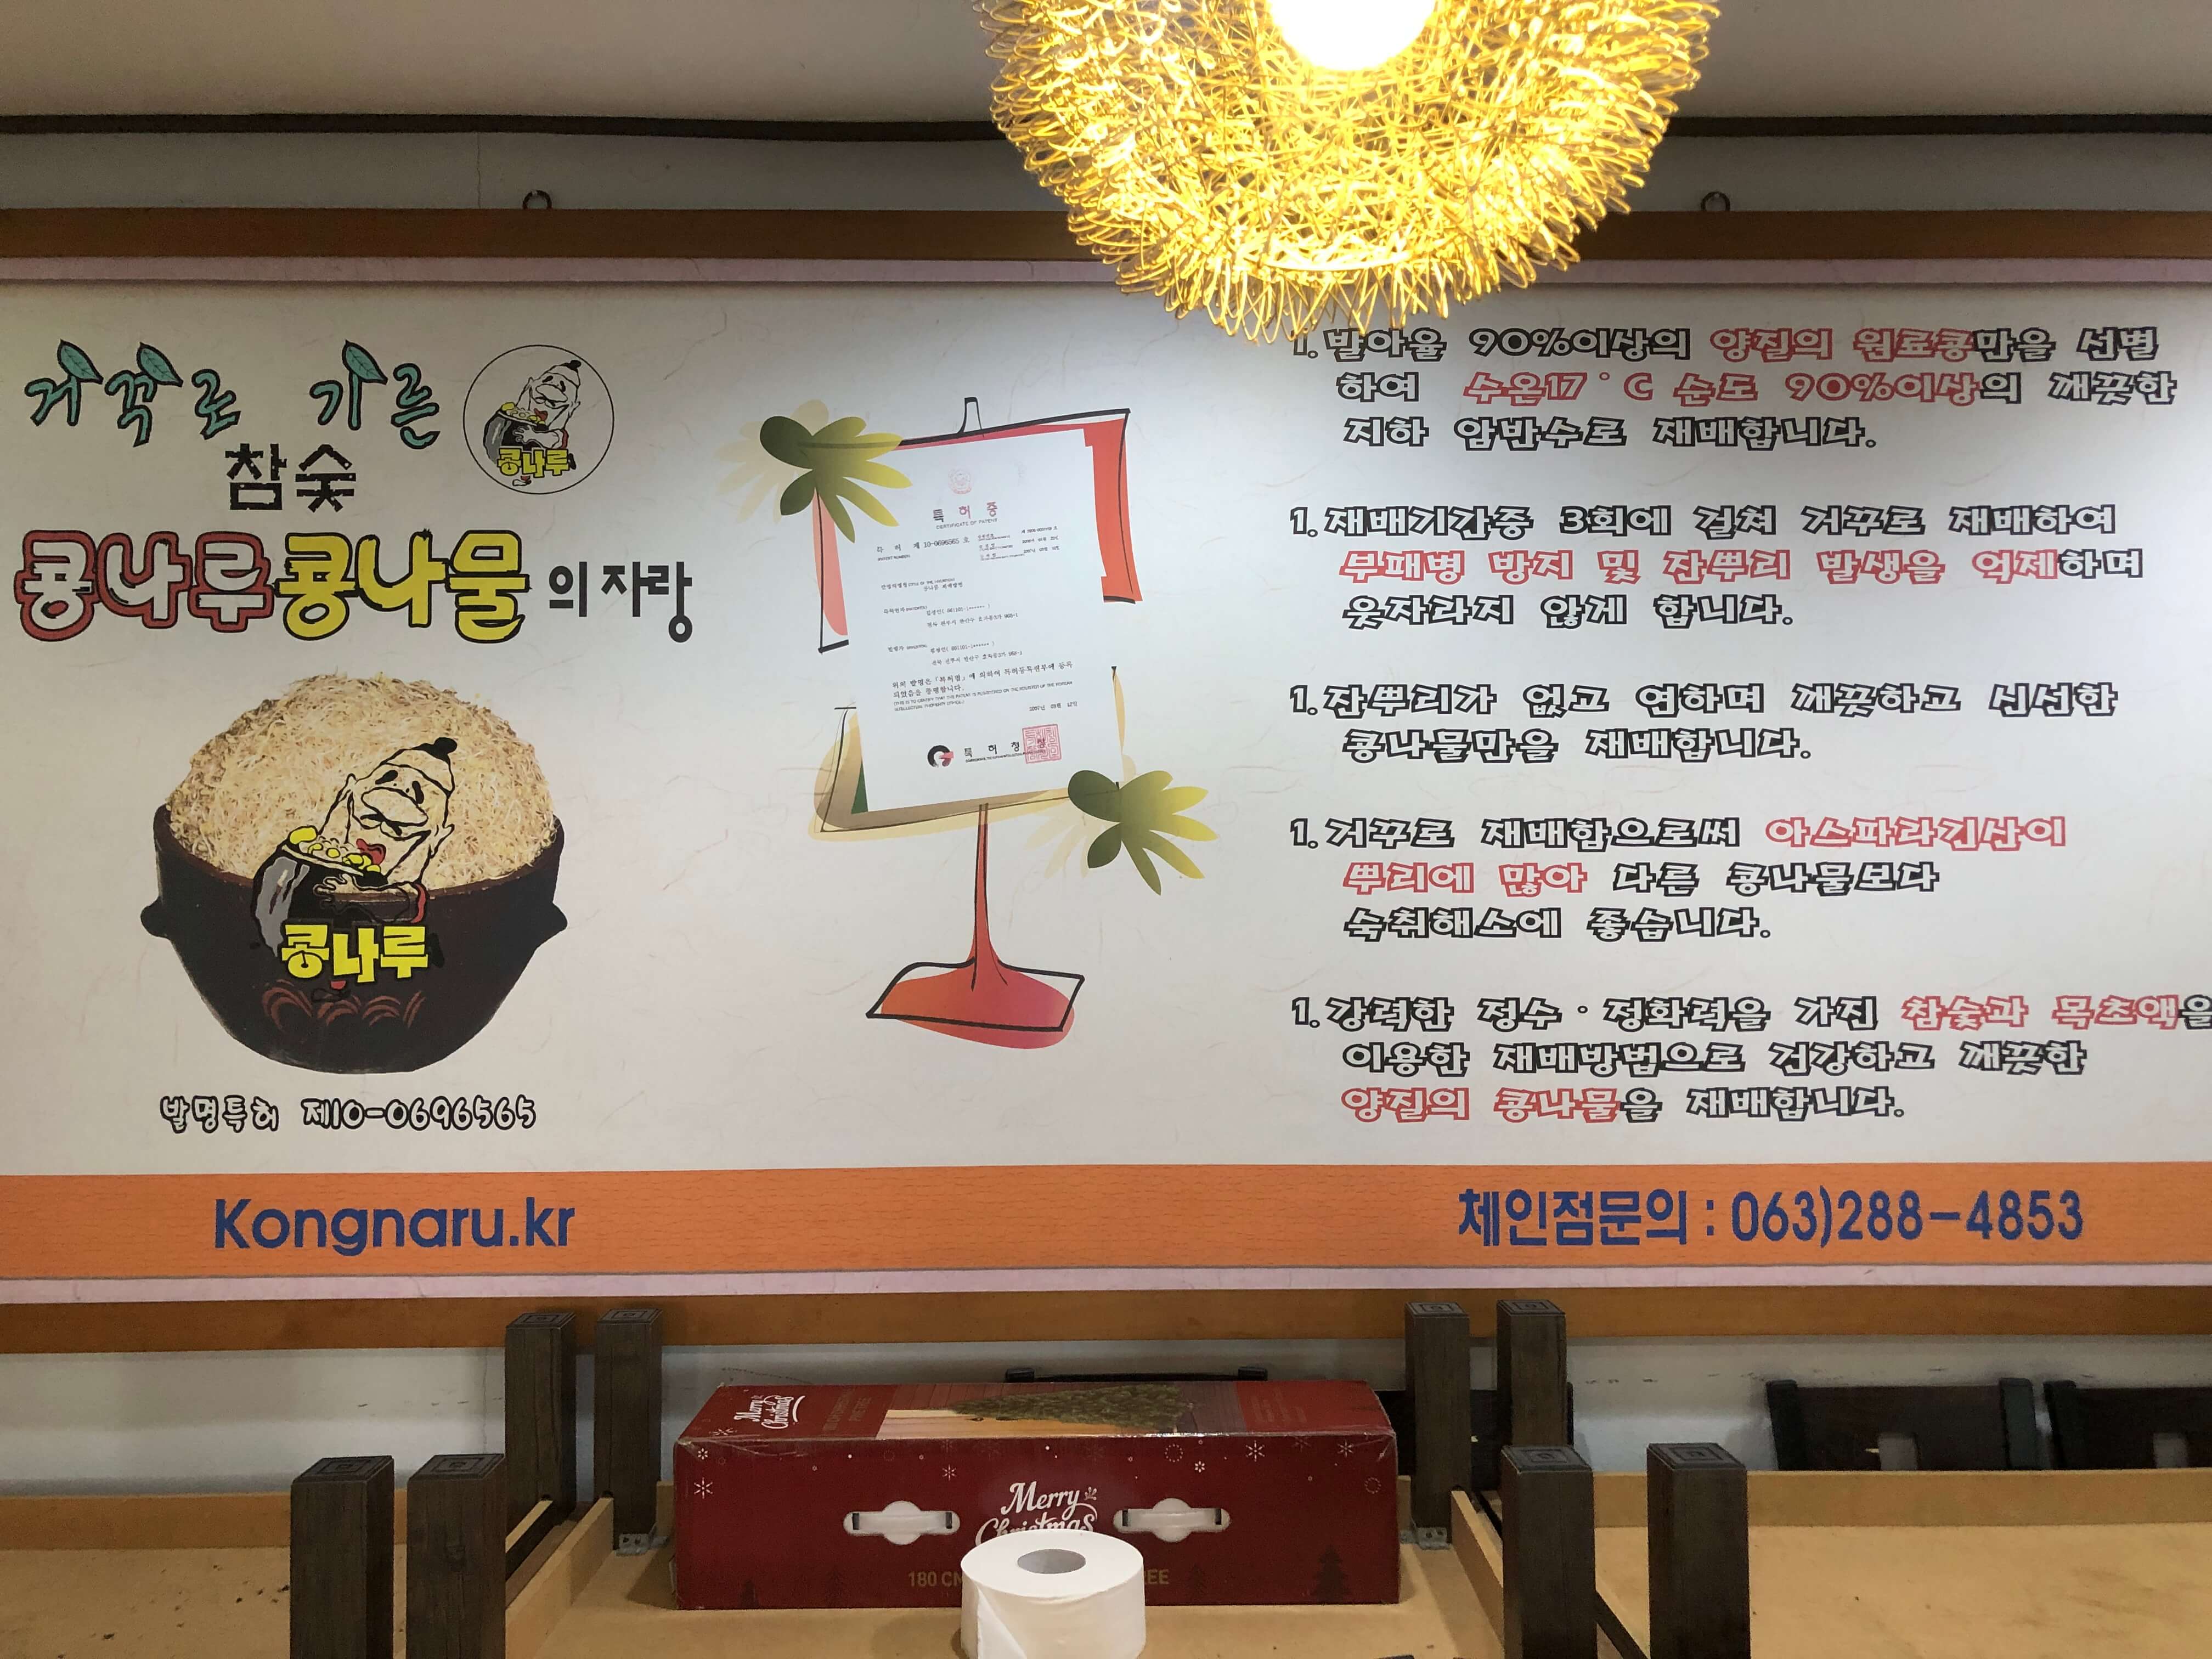 민수랜드-전주콩나루본점 콩나물